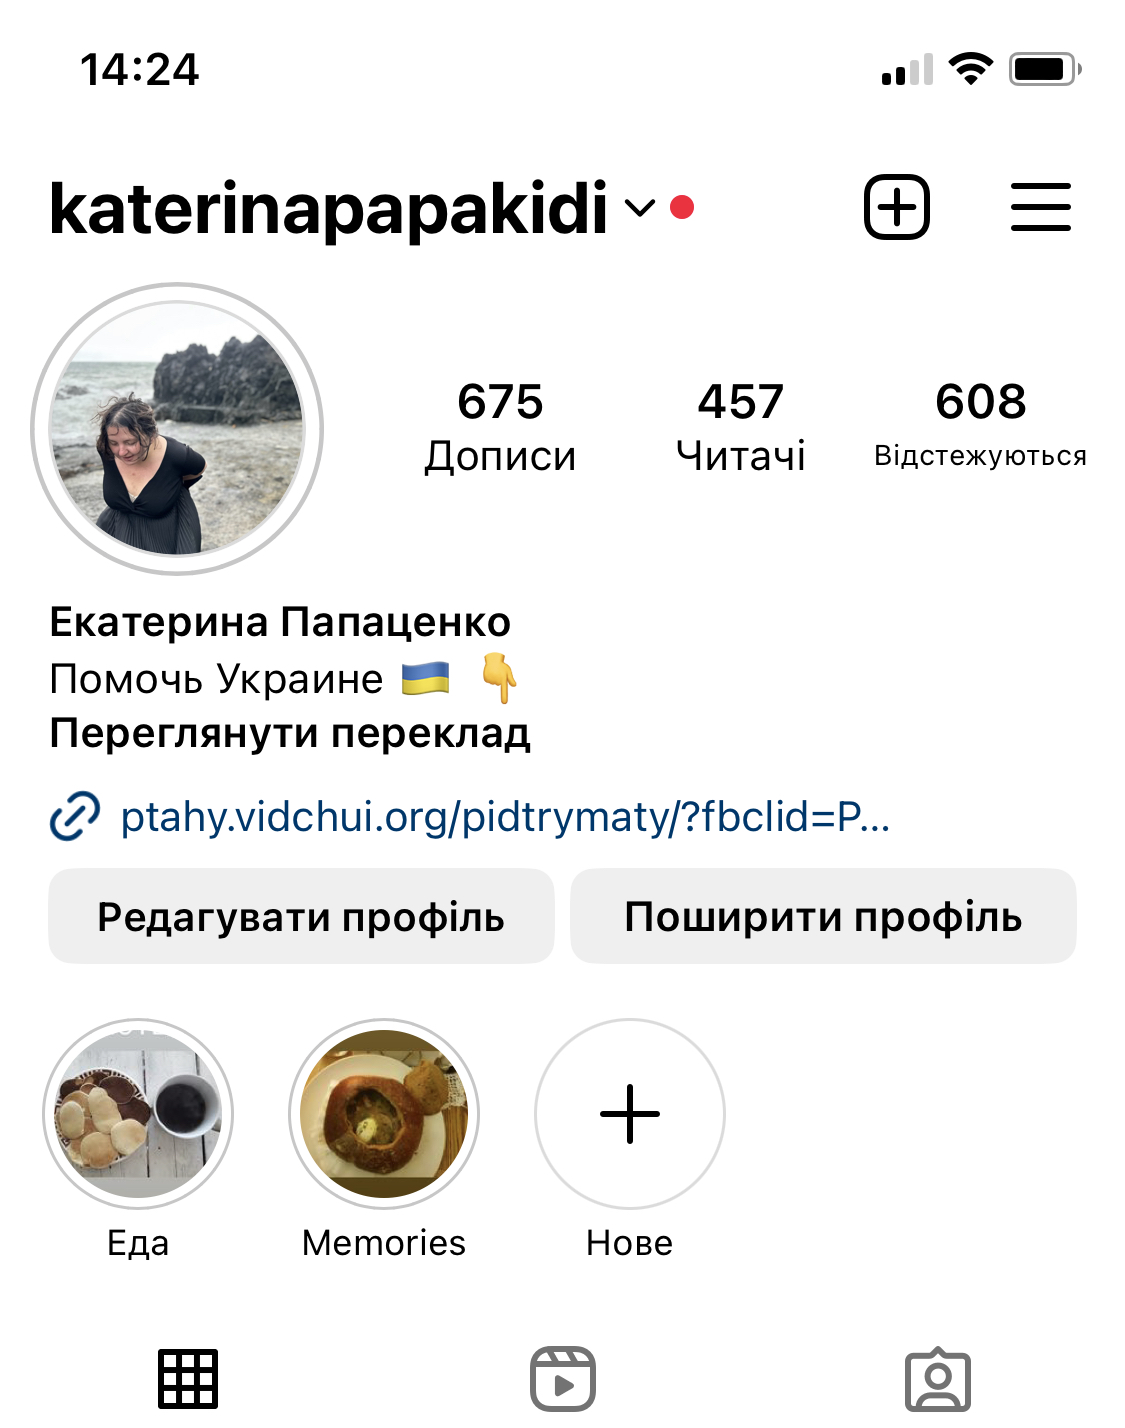 Початок переходу на бізнес-профіль в Instagram